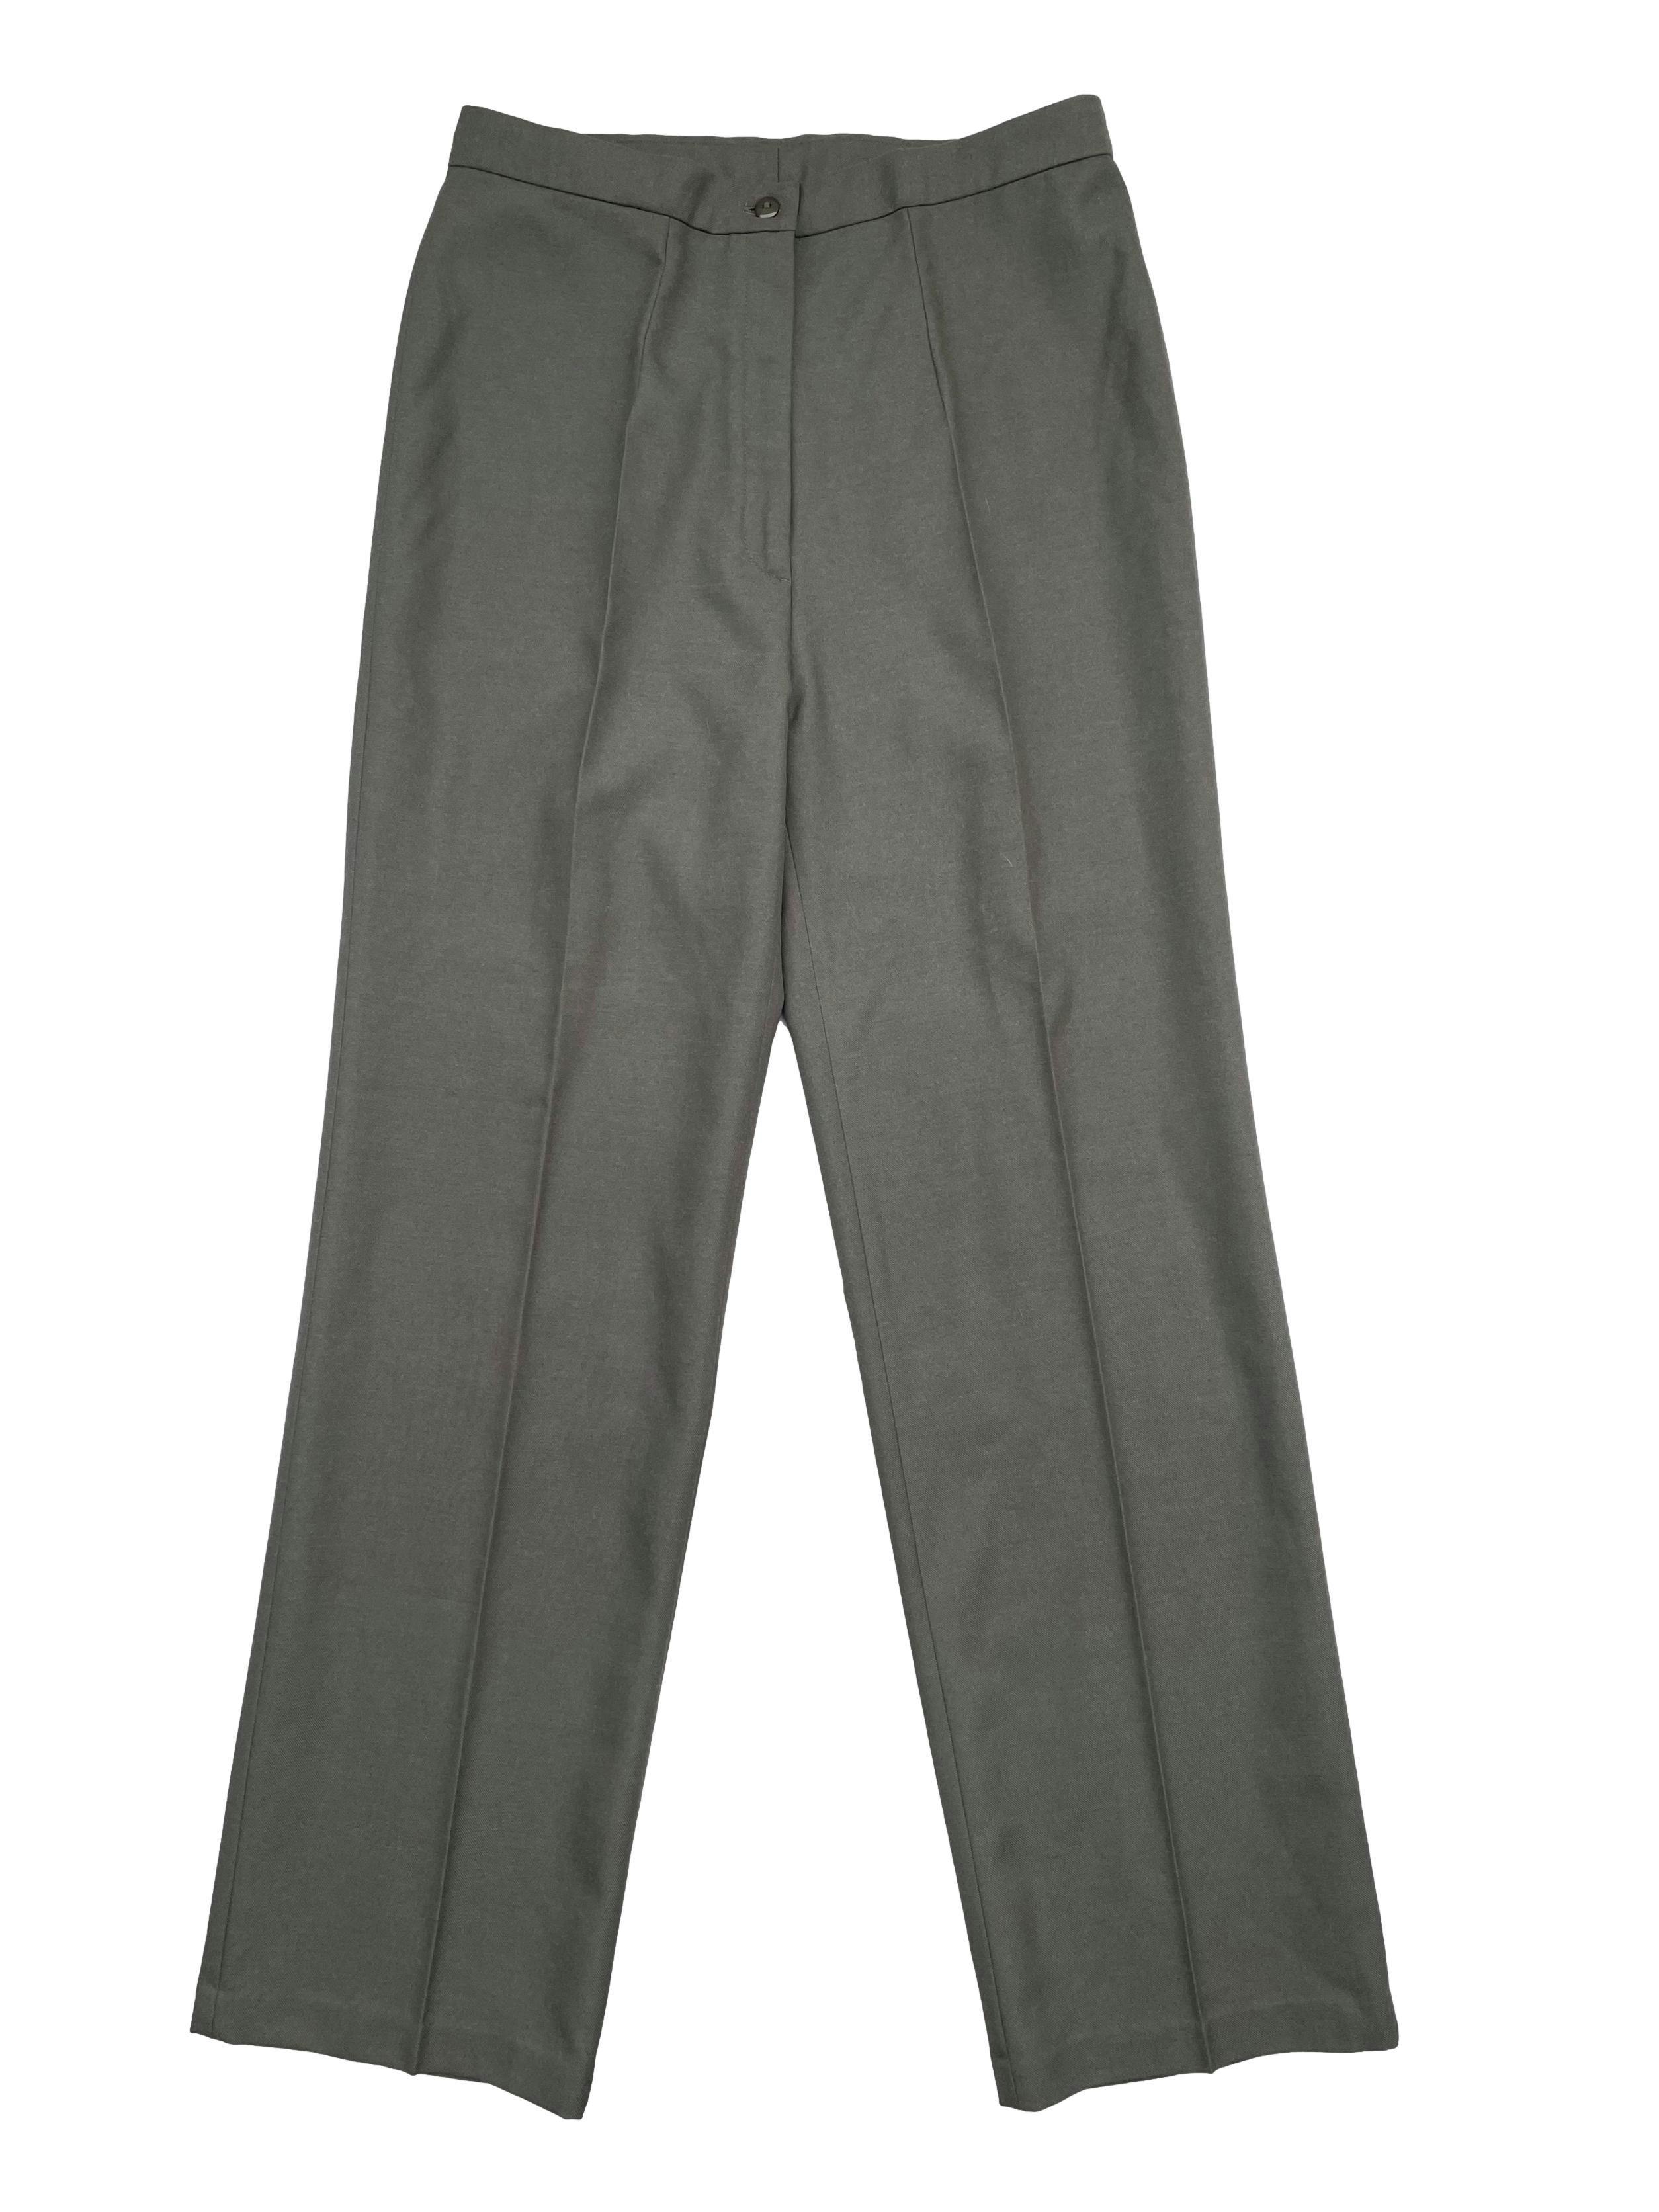 Pantalón sastre vintage verde grisáceo de tiro alto, pierna ancha y recta, pinzas en delantero y espalda , cierre frontal. Cintura 76cm, Largo 105cm.